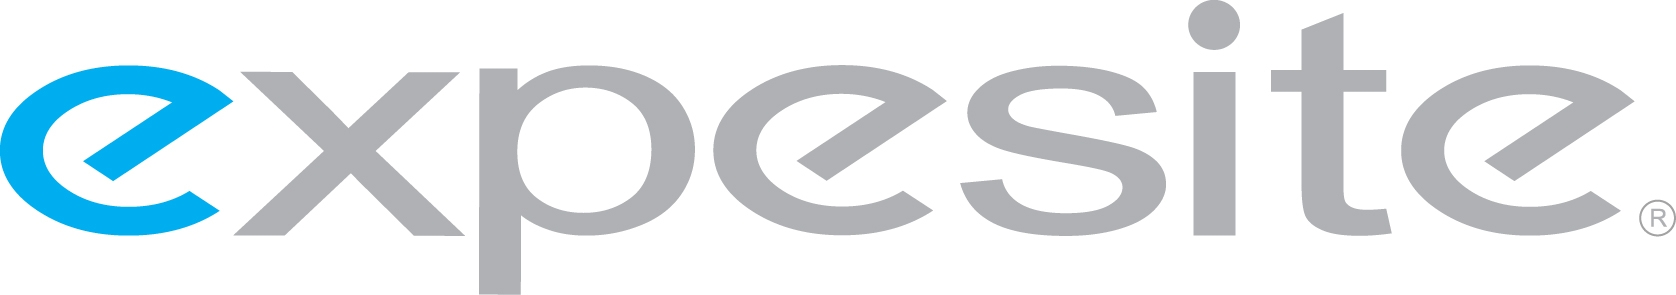 Expesite, LLC Logo